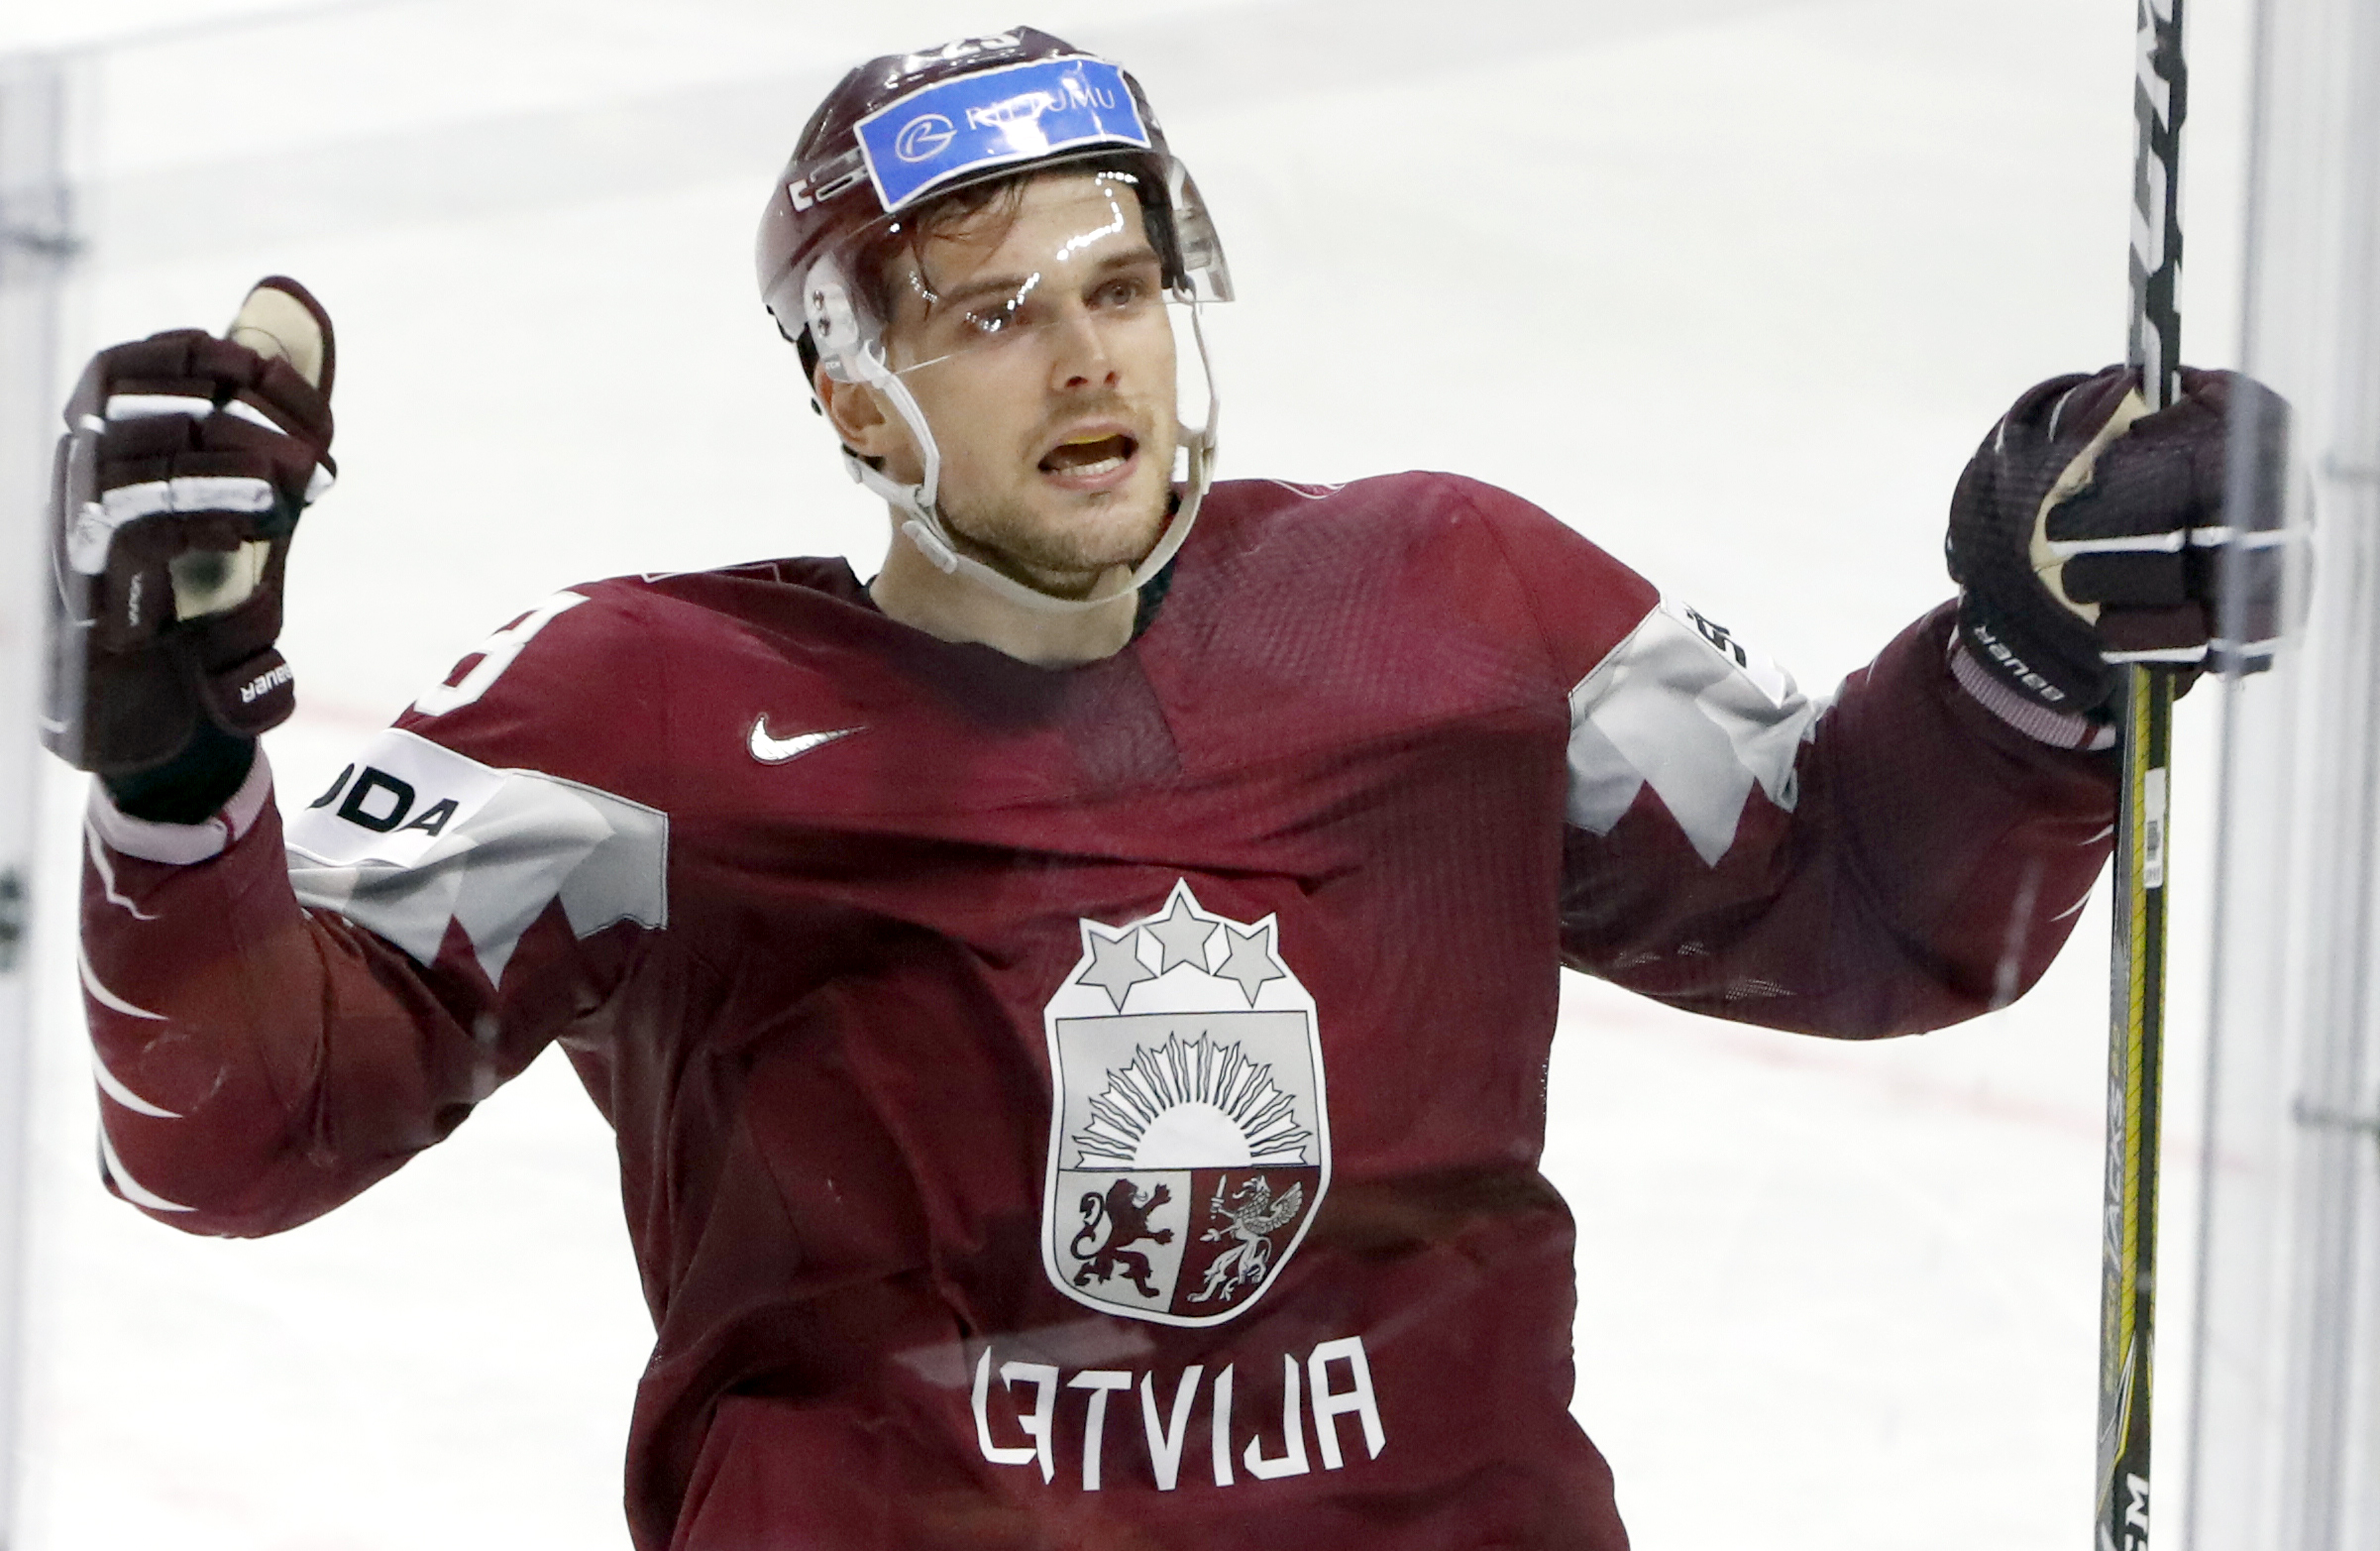 Lielais hokejs atgriežas Rīgā - Latvijas izlase Olimpiskajā kvalifikācijā startēs ar trim NHL vīriem